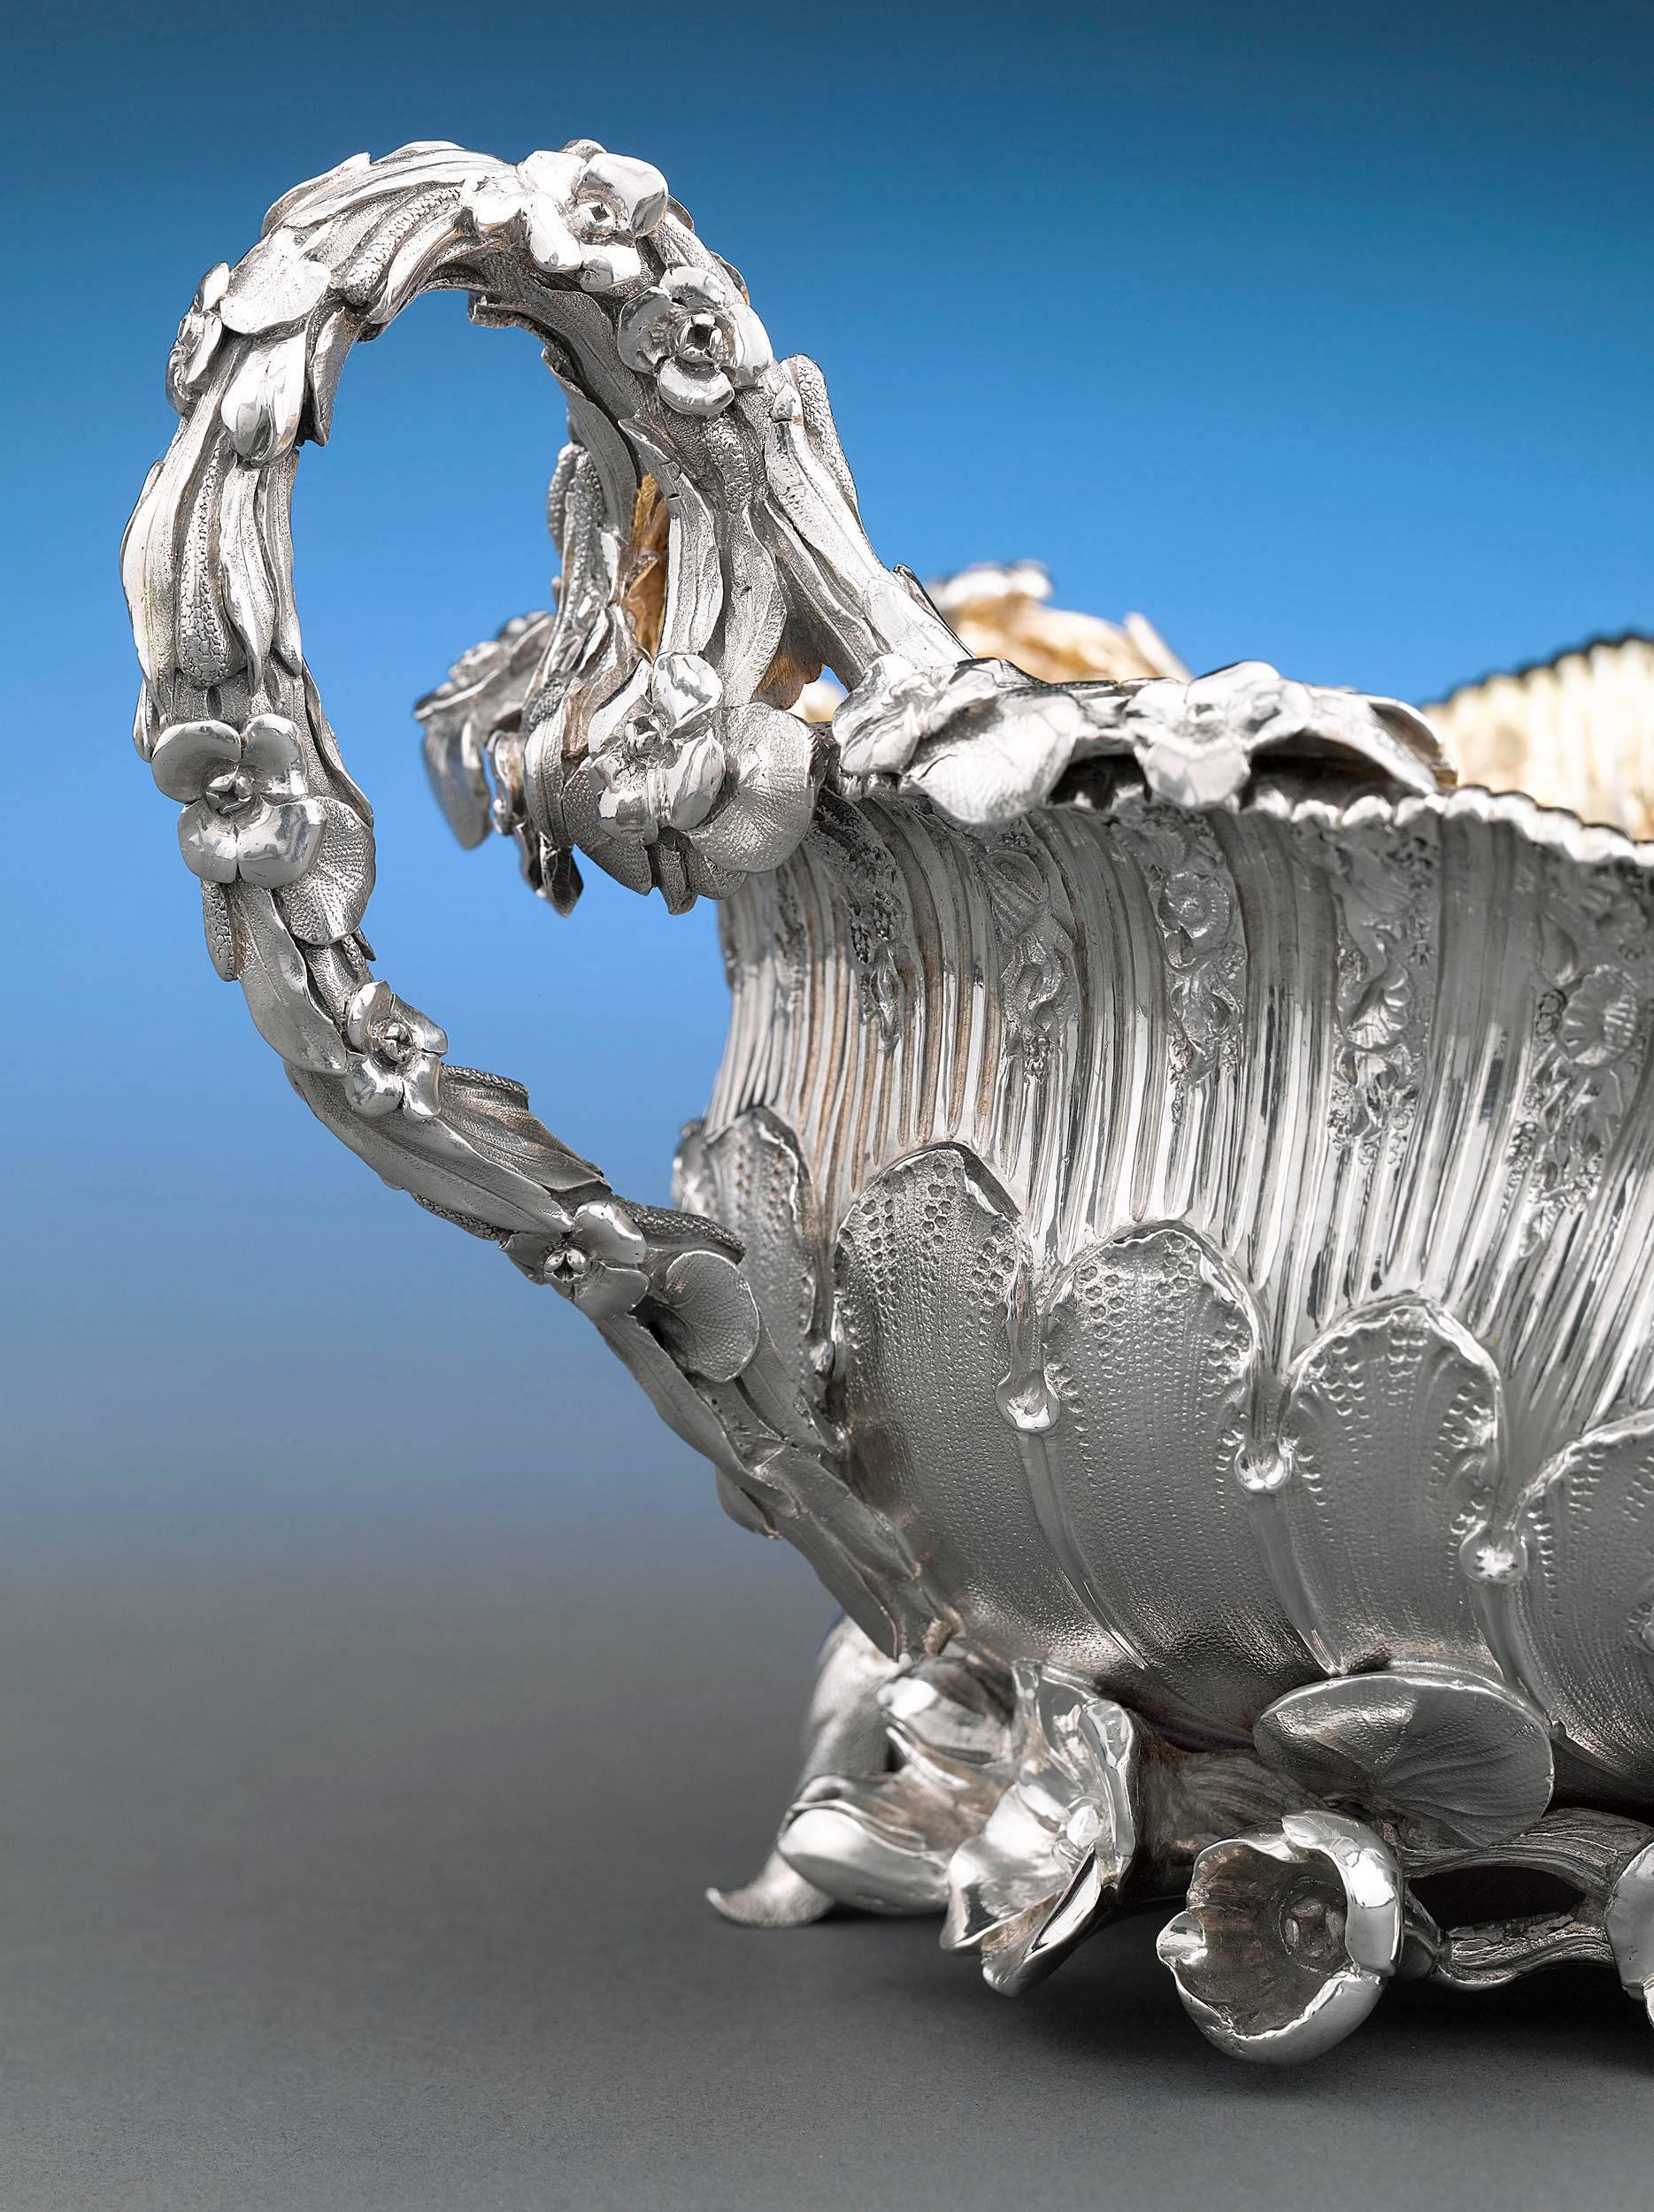 Diese exquisite Zuckerdose aus Silber des berühmten Benjamin Smith aus der Zeit Georgs IV. ist im üppigen Rokoko-Stil gefertigt. Von den floralen und blattförmigen Griffen bis zum fein gravierten Wappen ist dies ein geniales Werk. Ein vergoldetes,